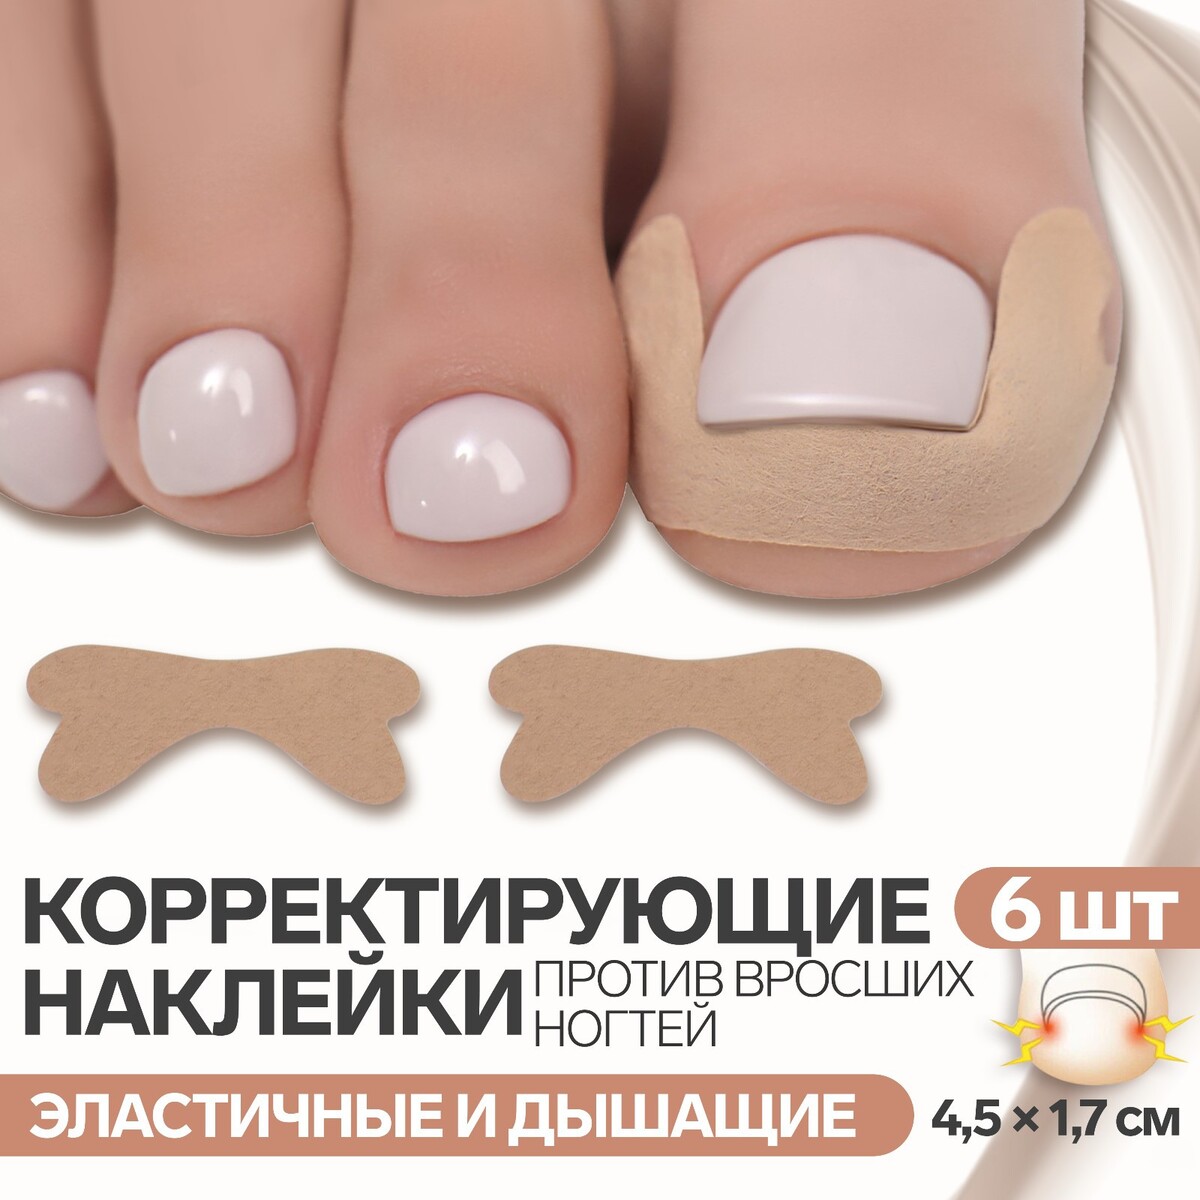 Наклейки против вросших ногтей, 6 шт, 4,5 × 1,7 см, цвет бежевый против нелюбви